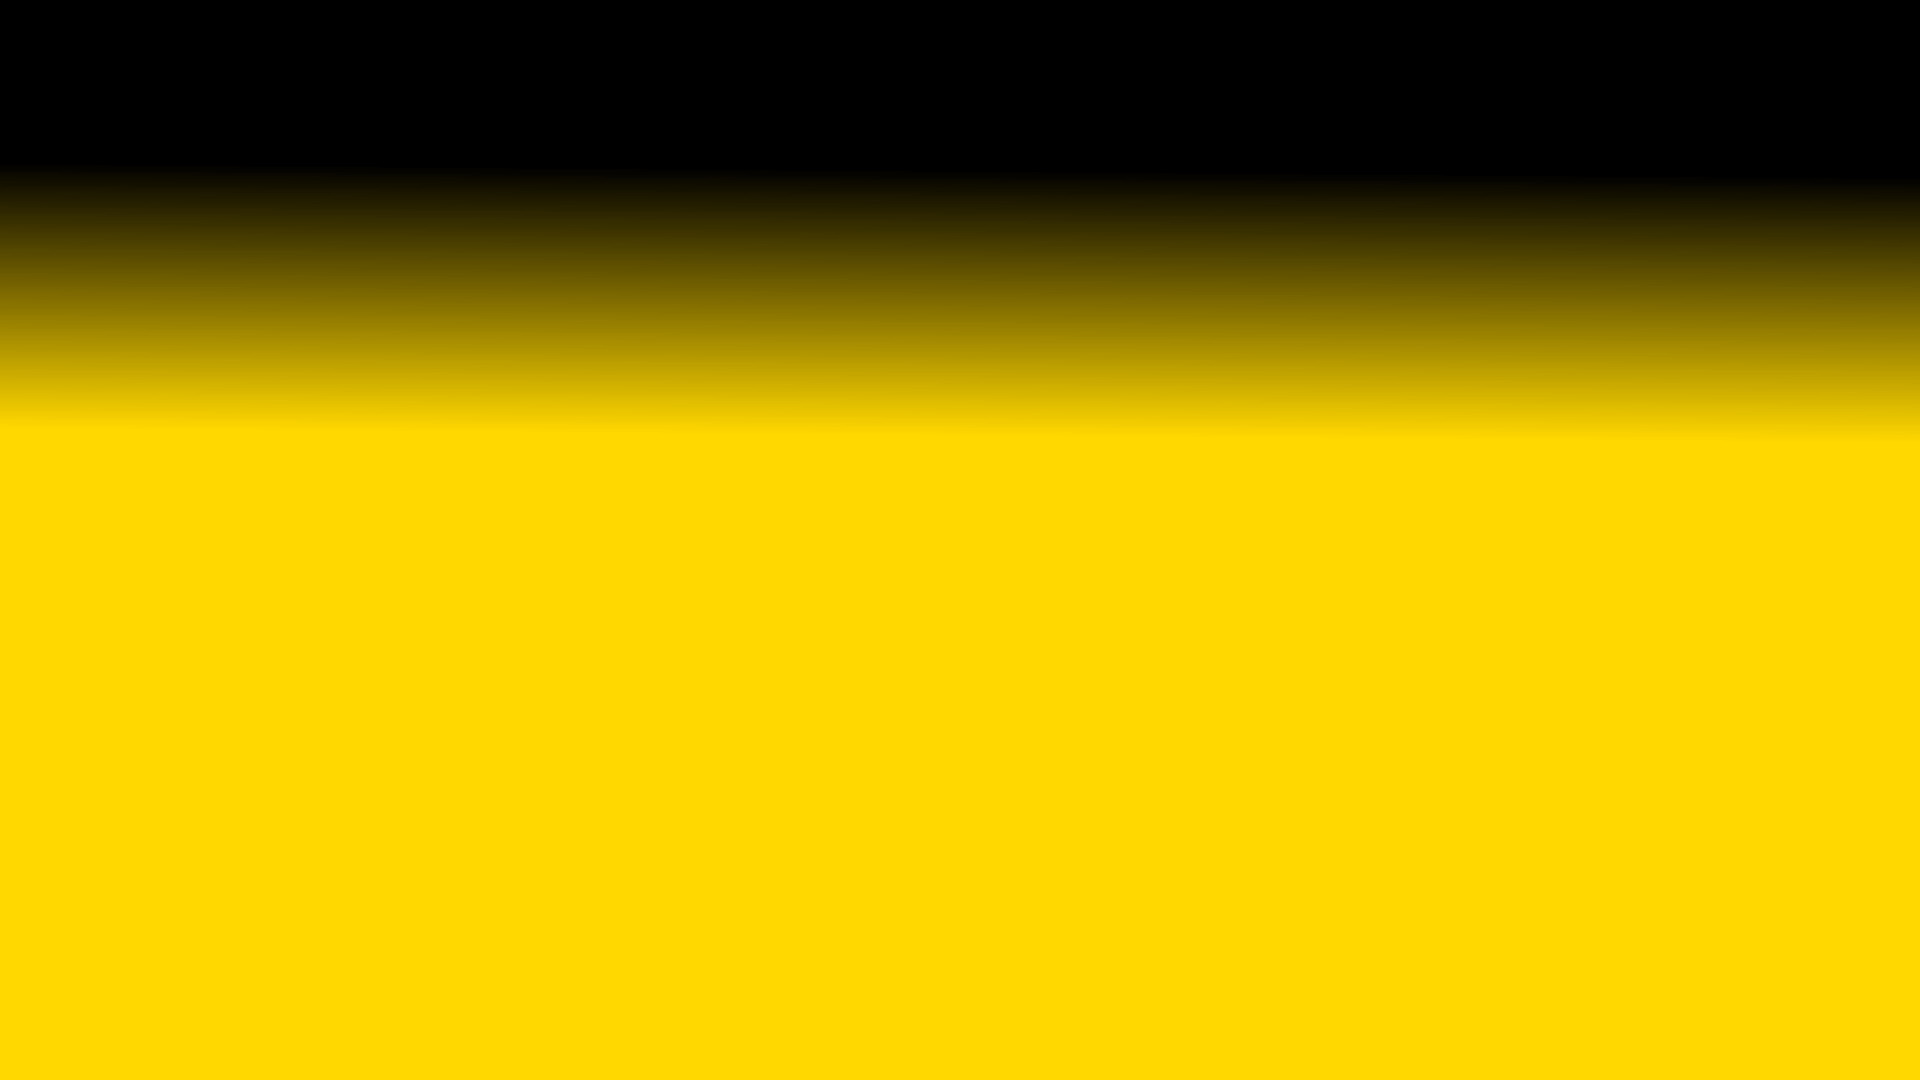 1920x1080 Wallpaper black desktop background yellow gradient computer .